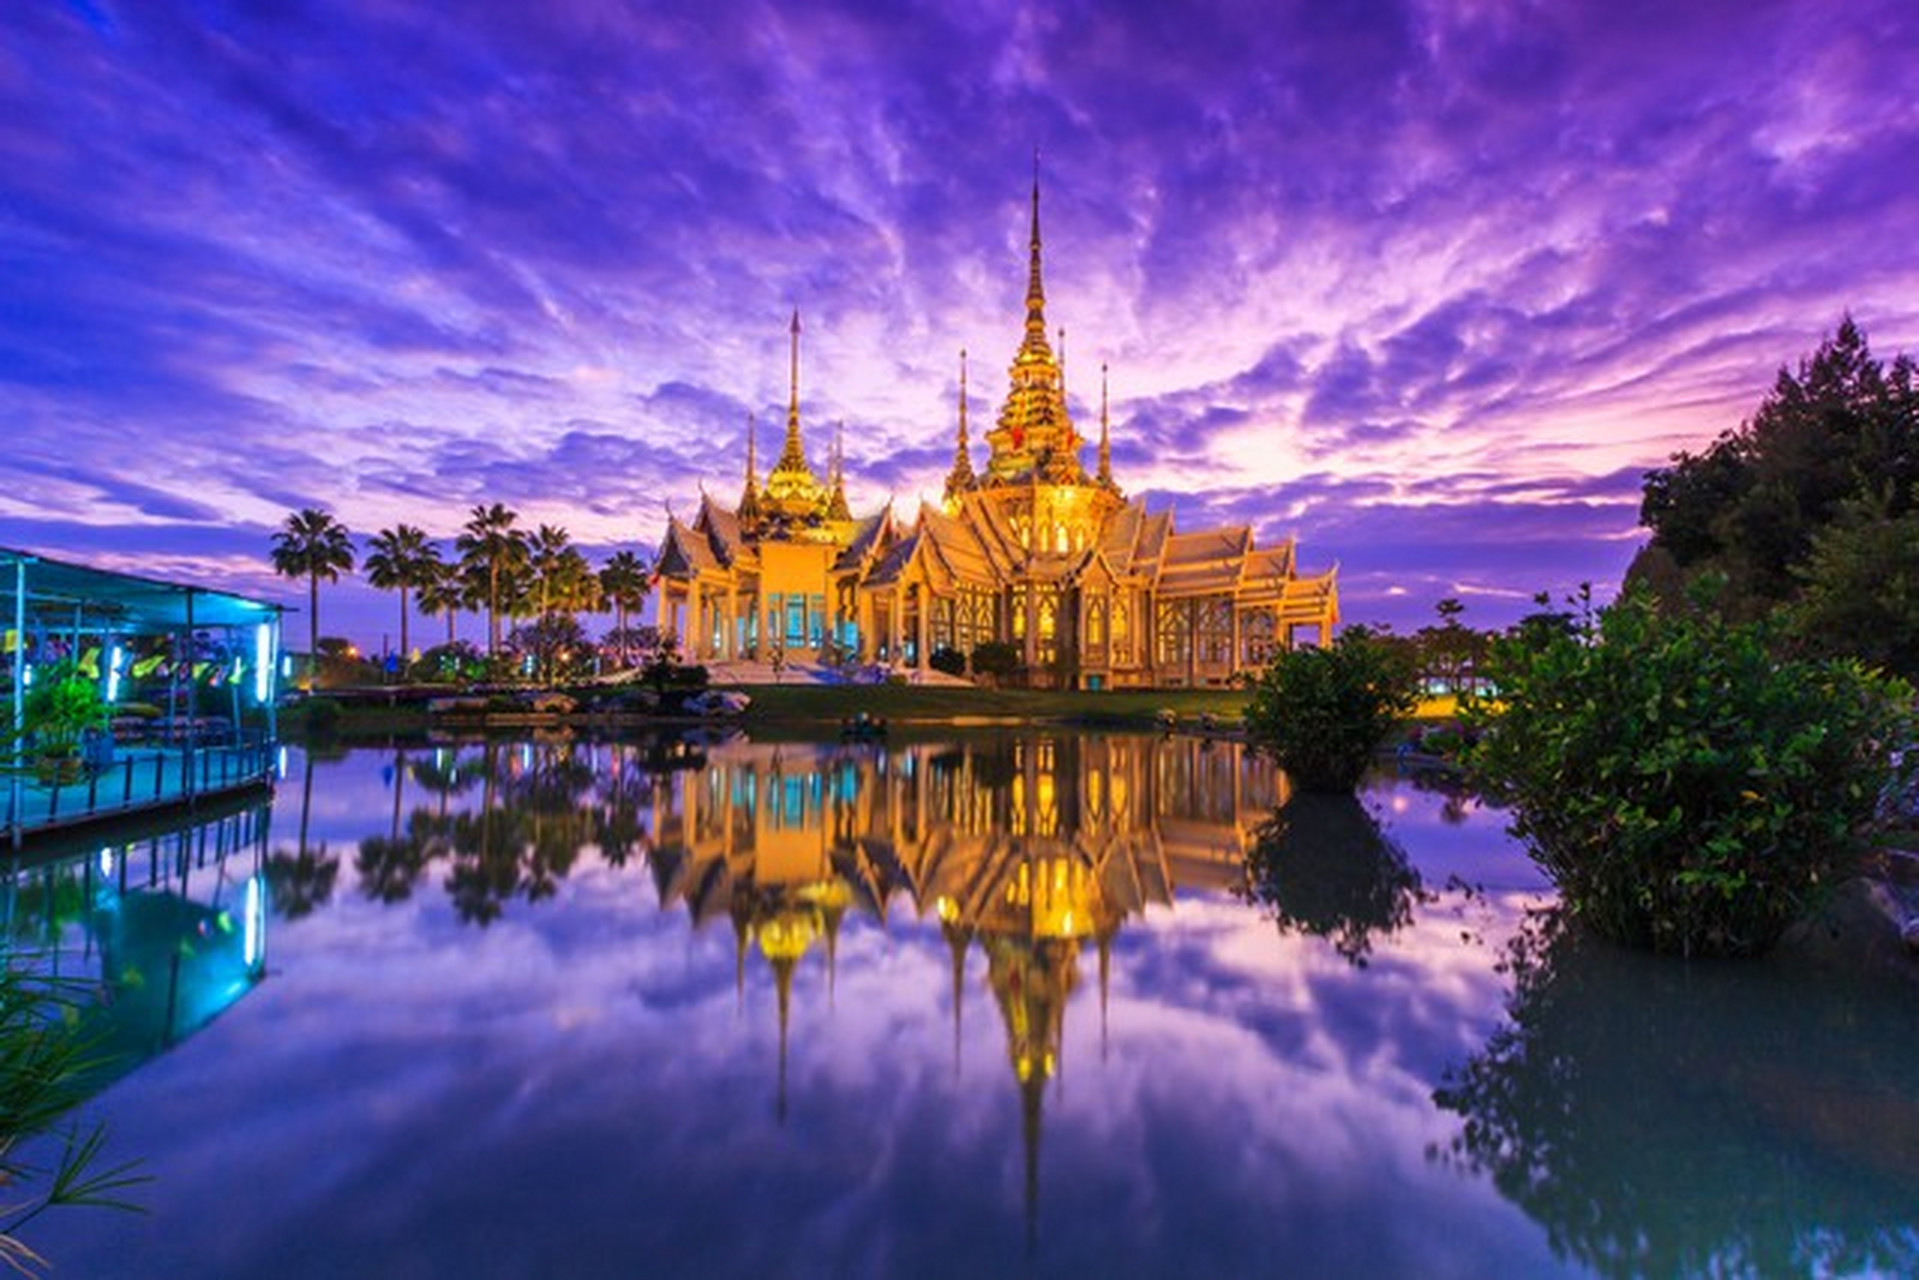 曼谷与内比都同为东南亚重要城市,各有特色